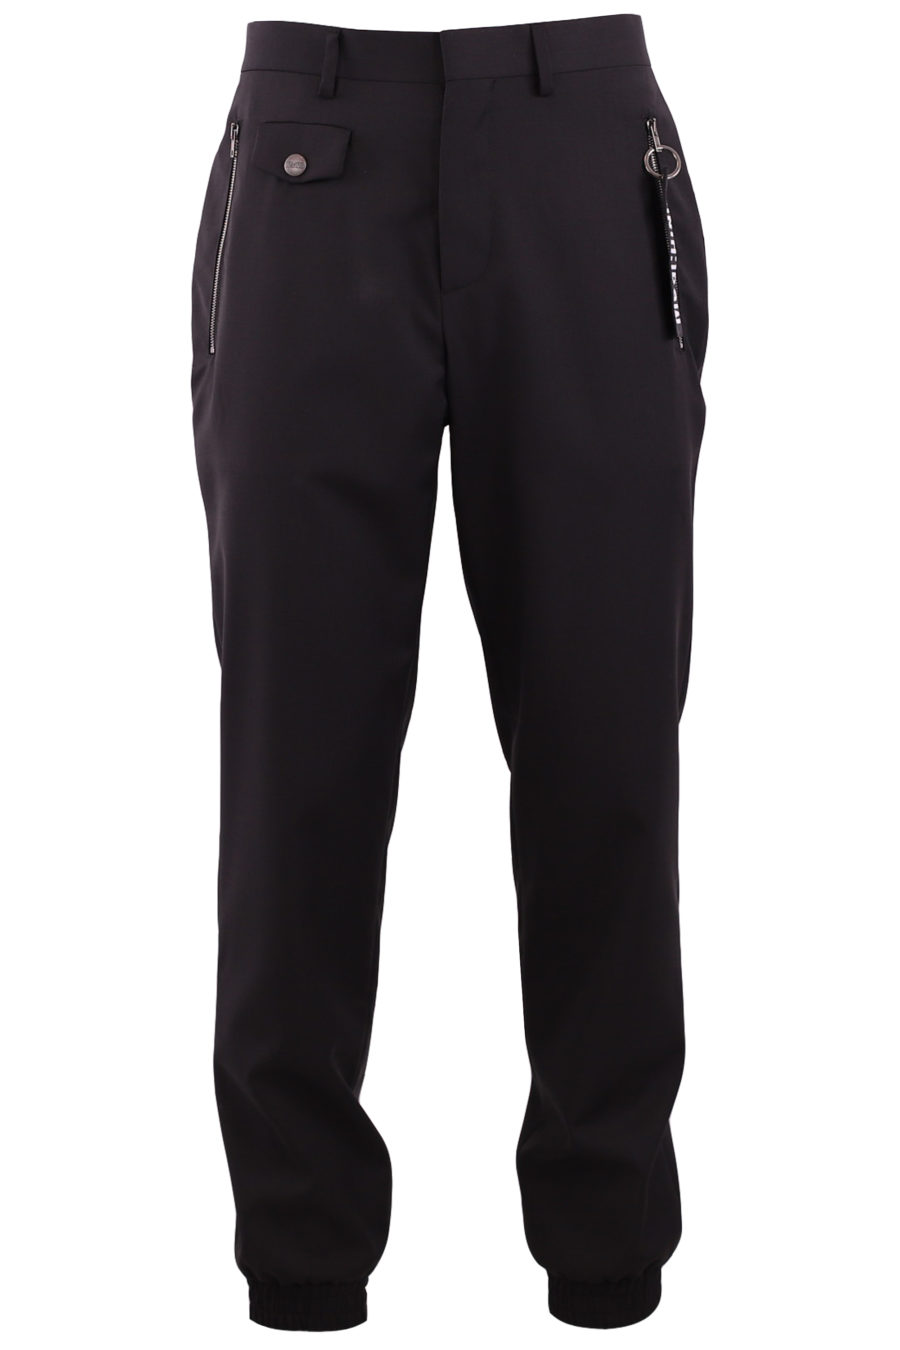 Pantalón jogger de color negro con logo - b8c0cc6af5d03107ae169f5c2efd753b8b17d875